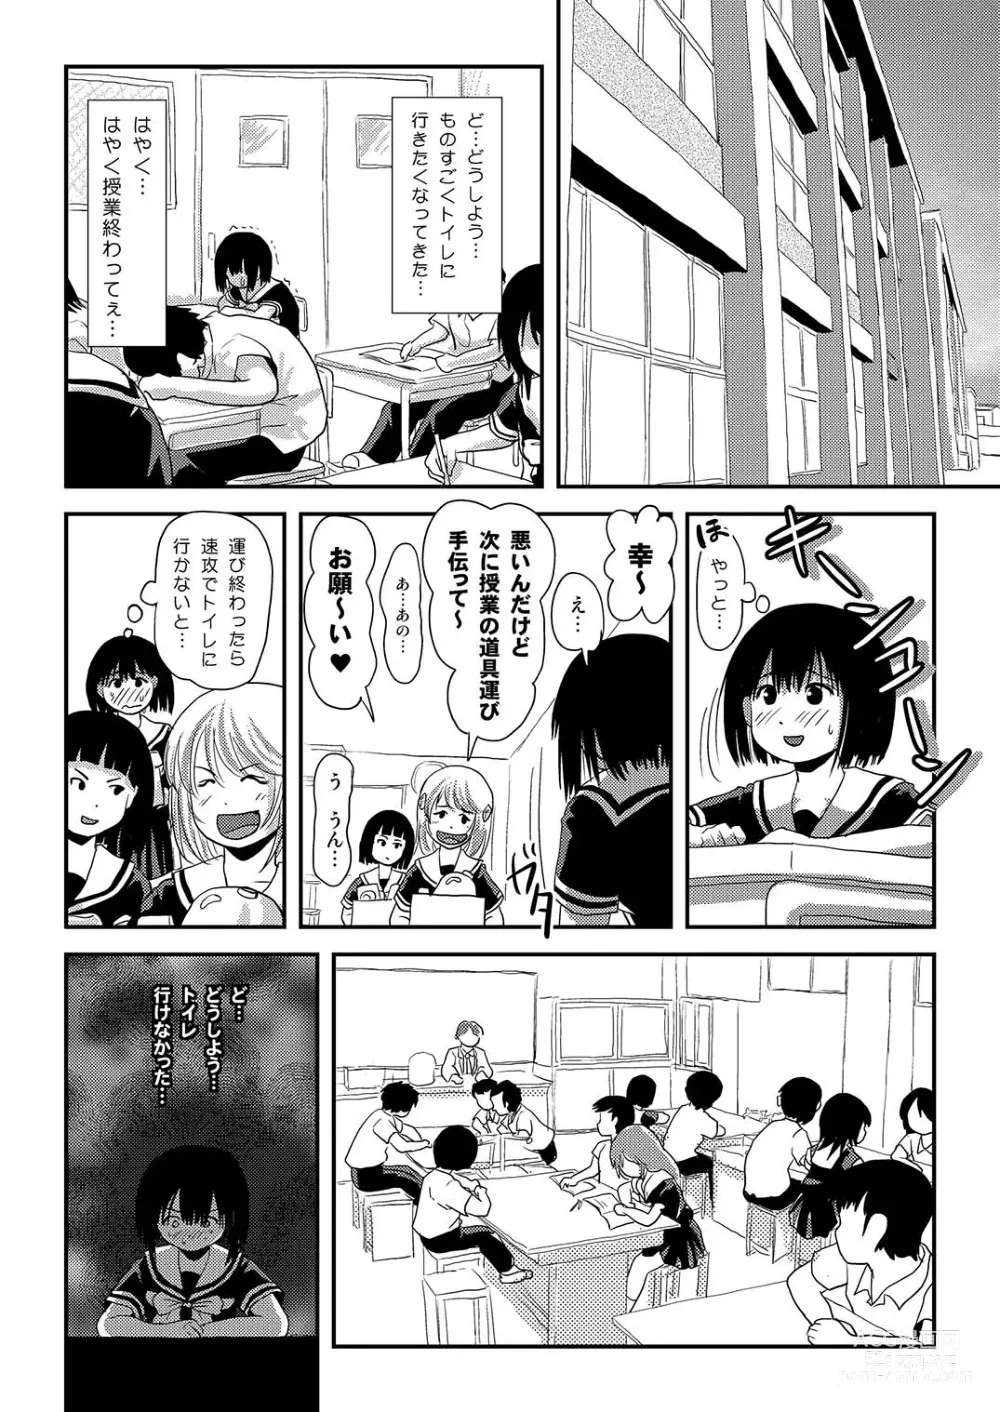 Page 14 of doujinshi Sonna no zurui 2